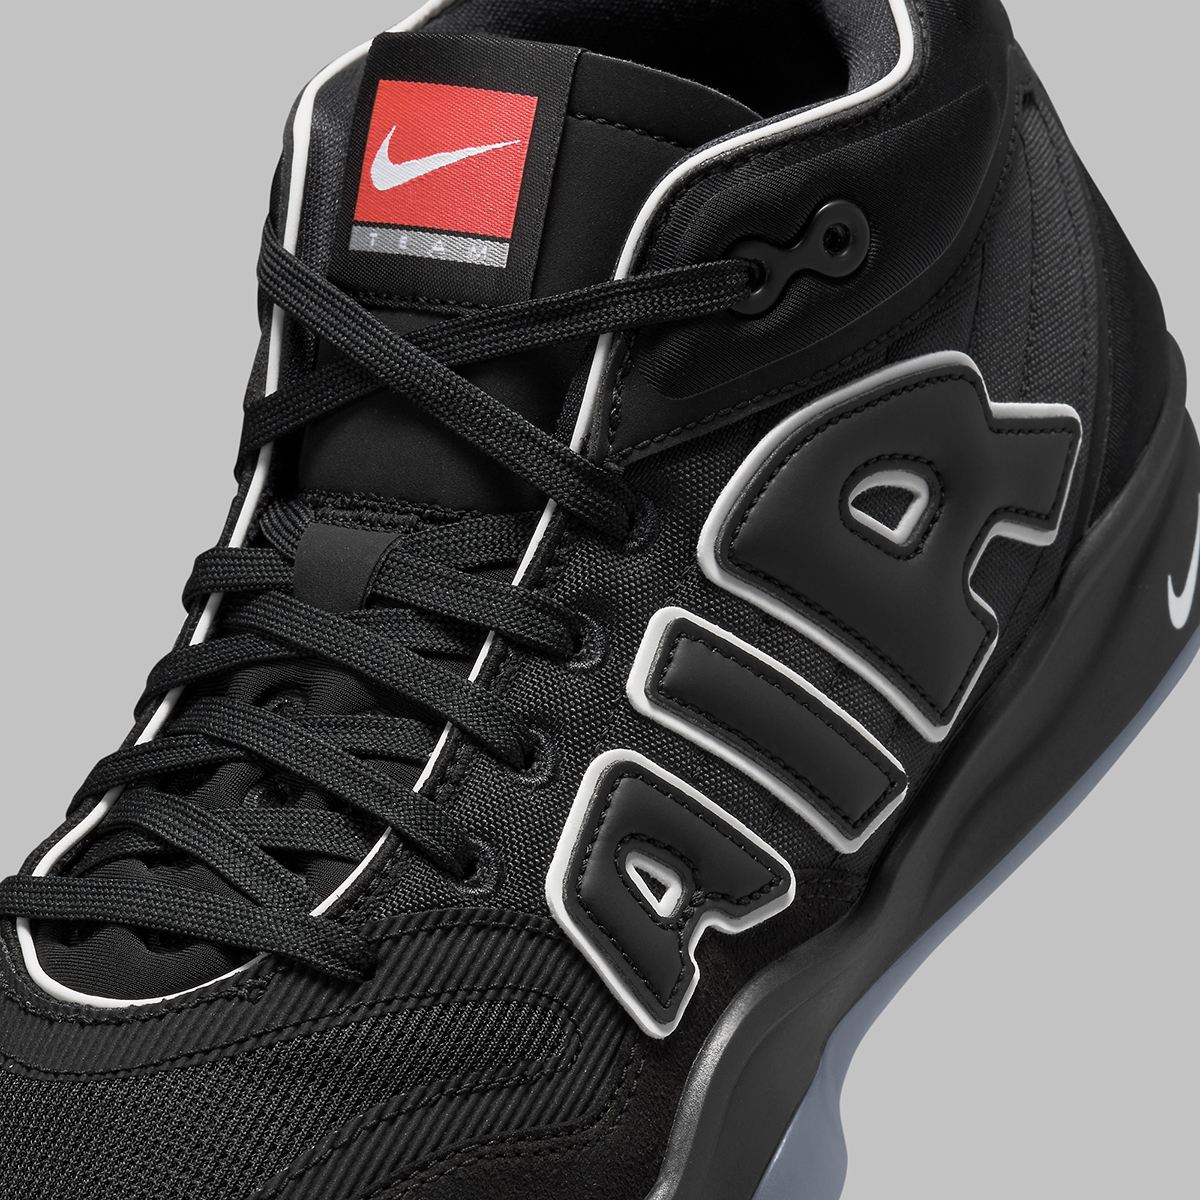 Nike Gt Hustle 2 Uptempo Fz4643 002 Release Date 1